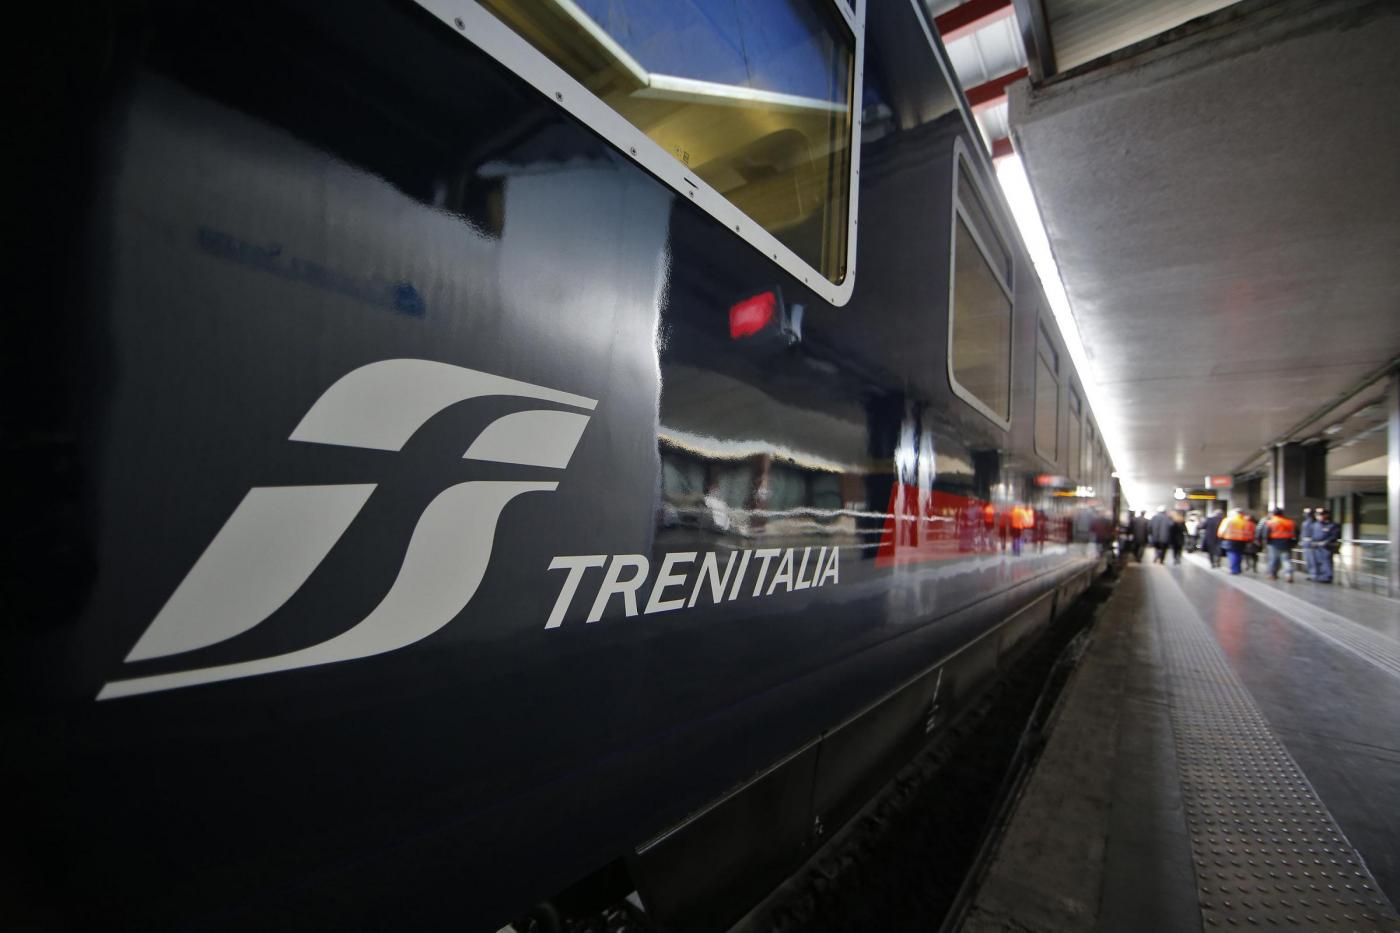 Presentazione del nuovo contratto tra Governo e Trenitalia per il nuovo servizio Intercity.